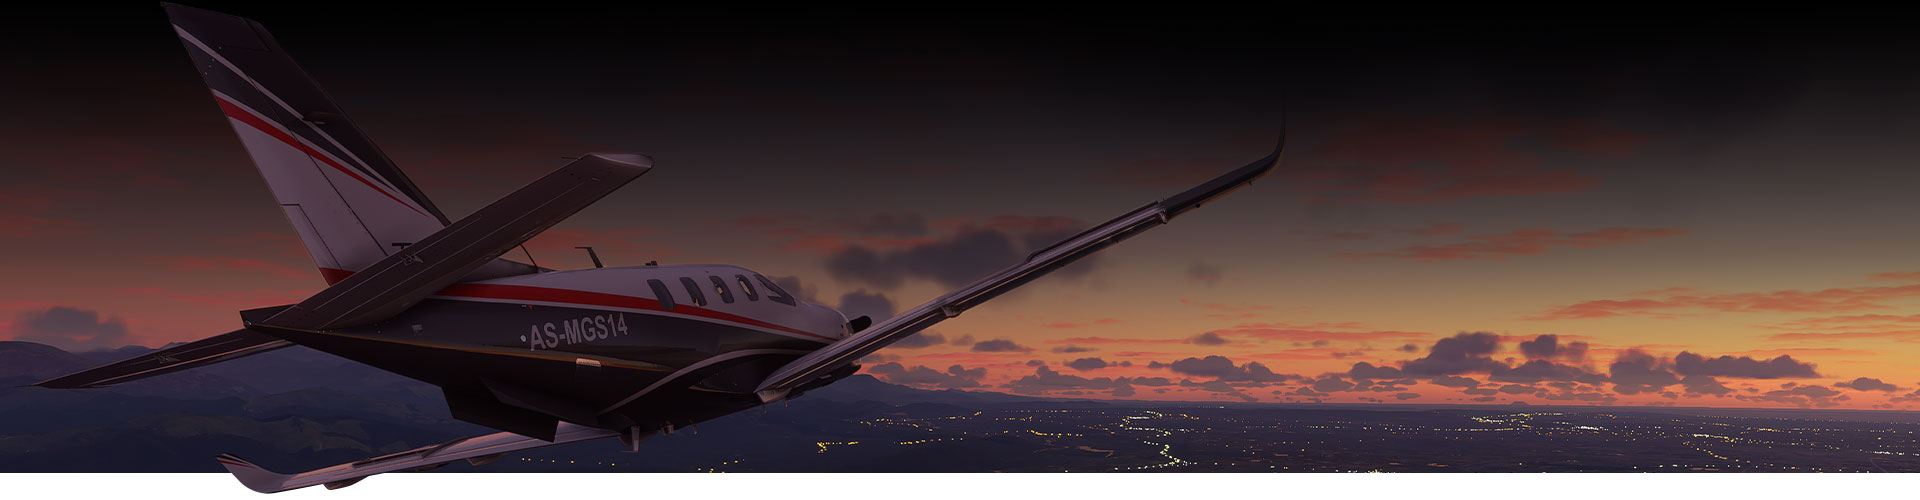 Plan från Microsoft Flight Simulator som flyger över en stad i solnedgången